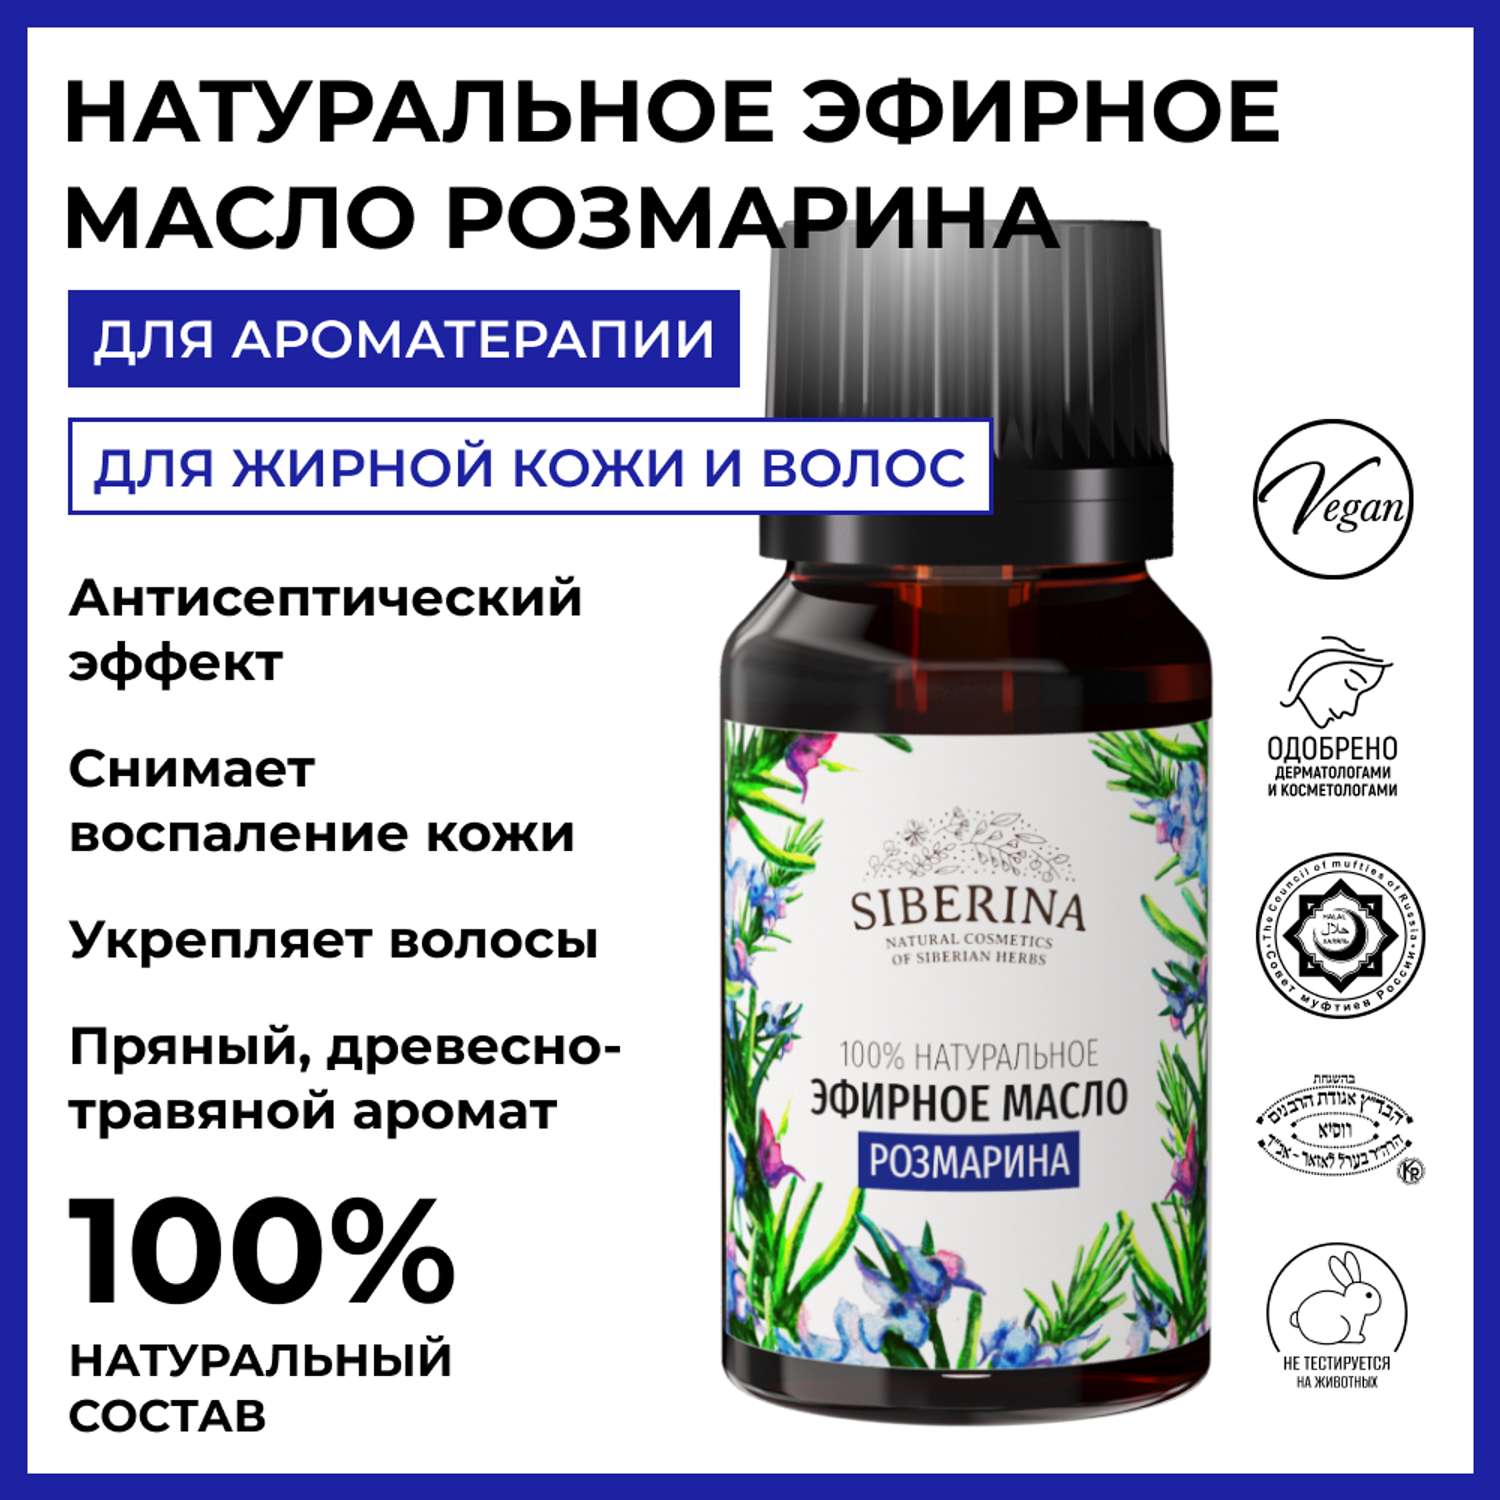 Эфирное масло Siberina натуральное «Розмарина» для тела и ароматерапии 8 мл - фото 2